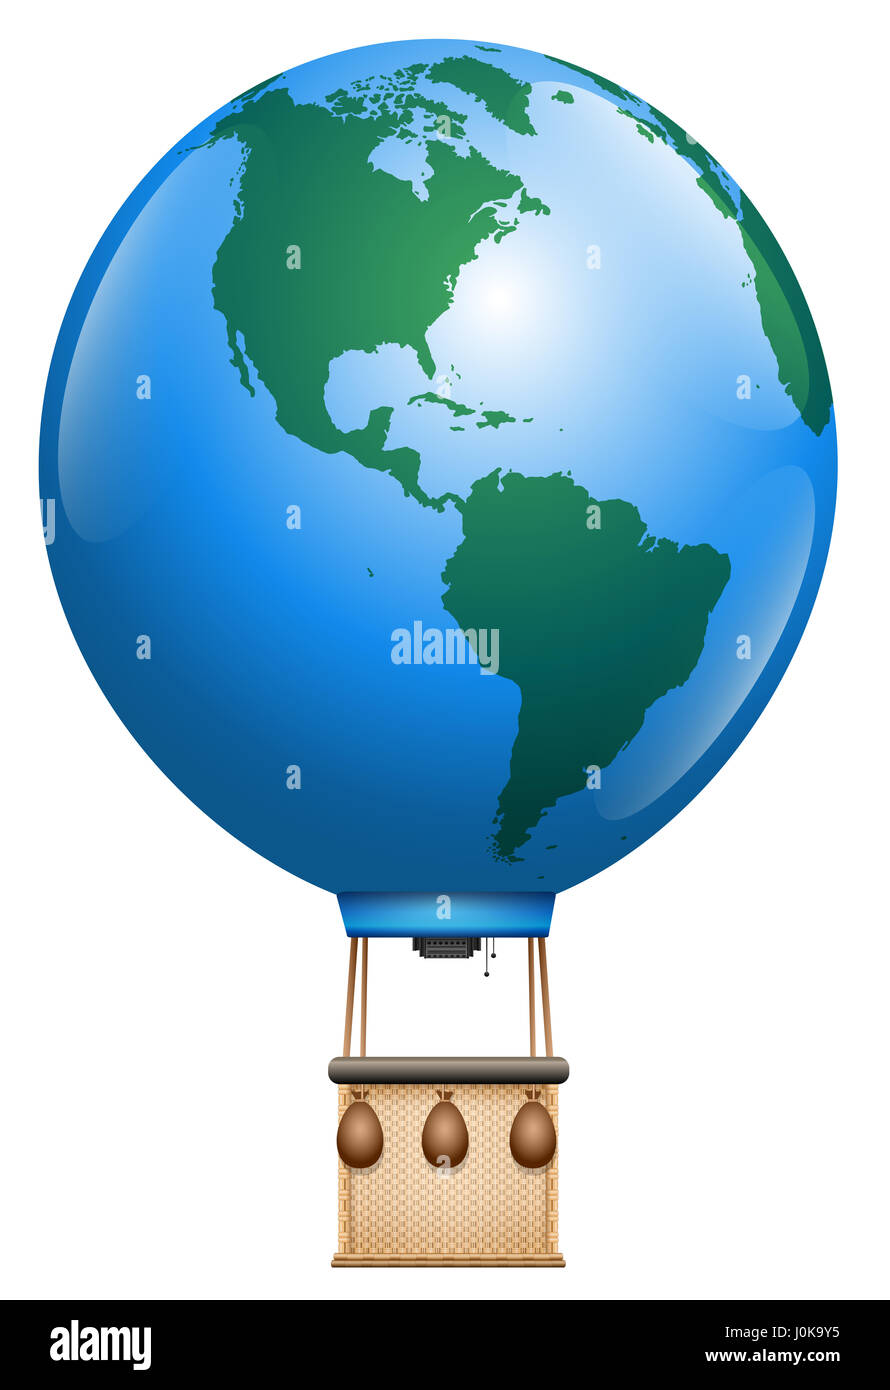 En globo de aire caliente - Planeta Tierra con cesta - símbolo de viaje Vuelta al Mundo u otros problemas de la aviación mundial - Ilustración aislado sobre blanco. Foto de stock